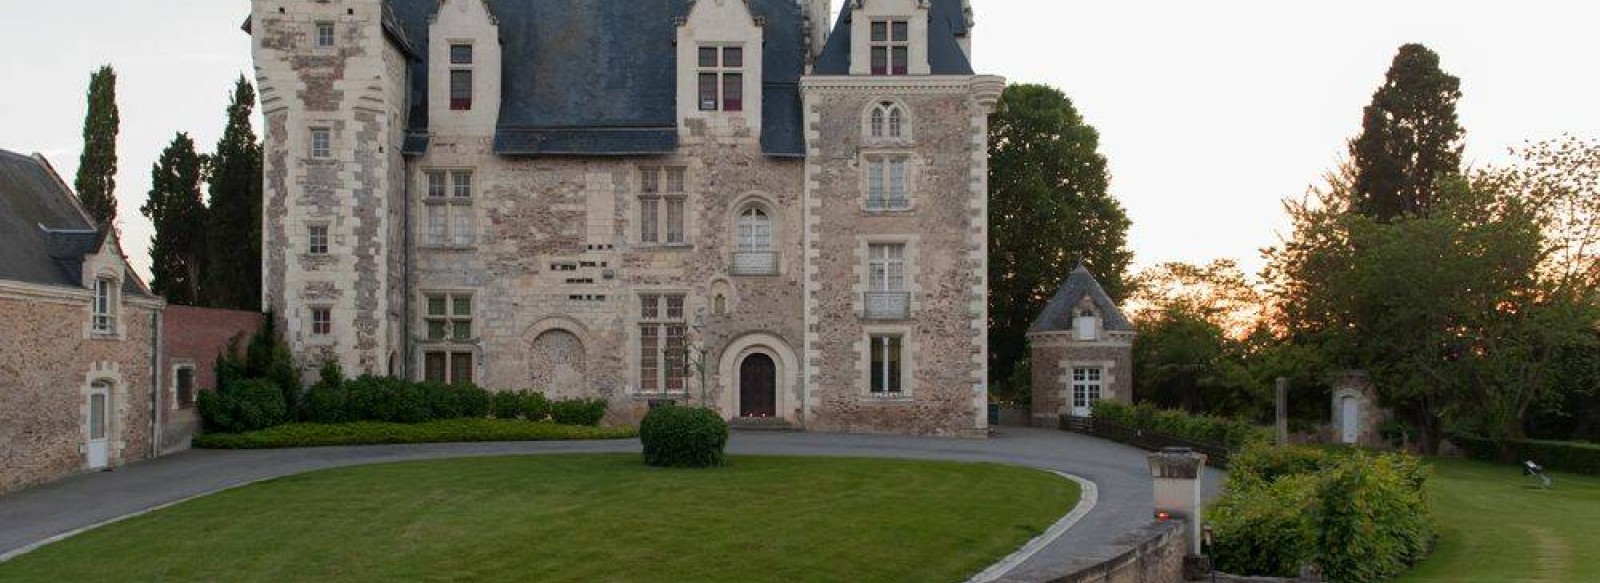 Chateau - Musee de Villeveque